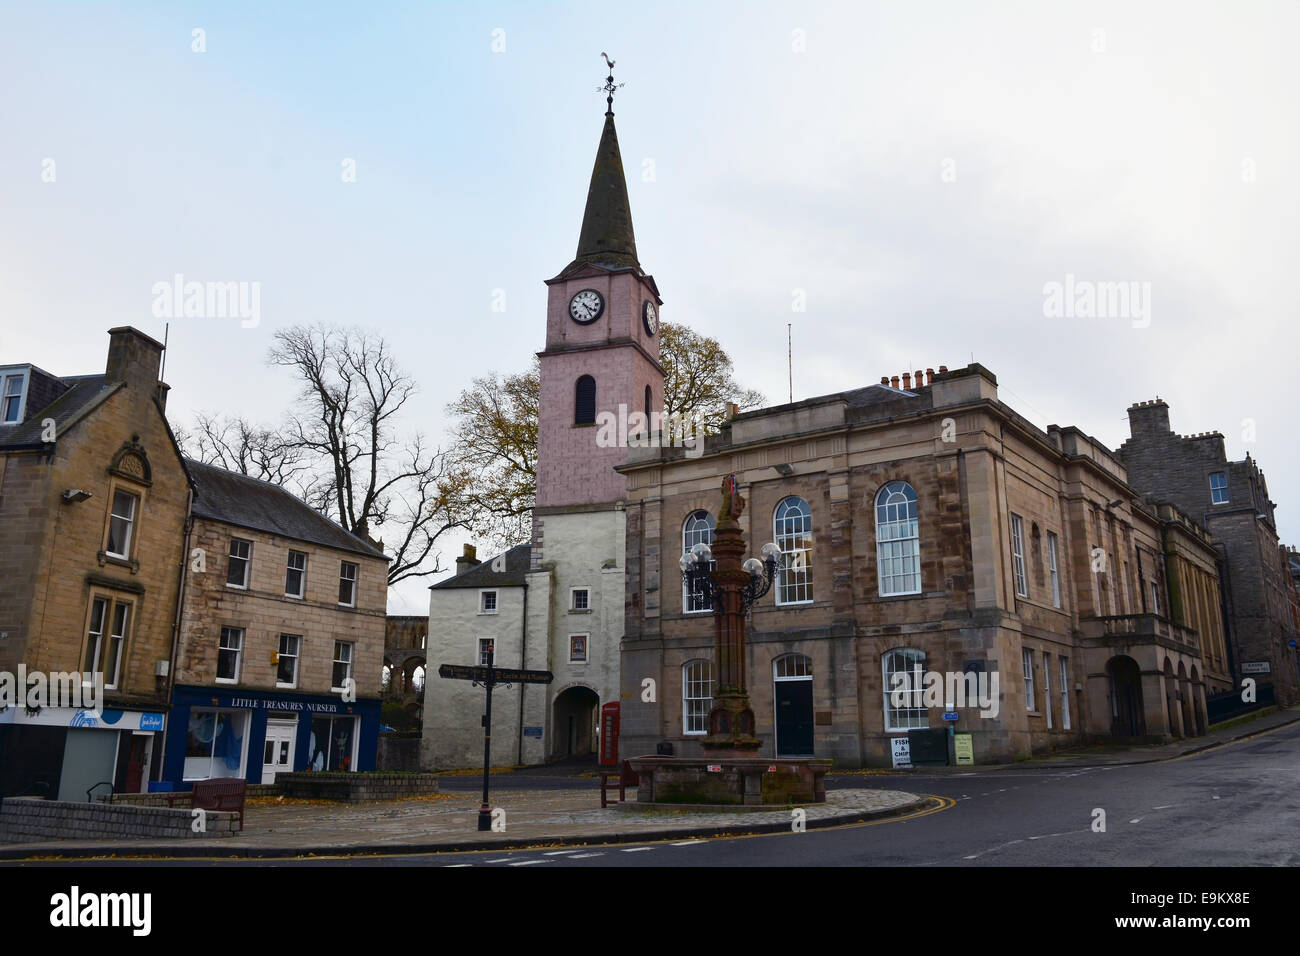 El histórico Mercat Cross y el chapitel de puerta nueva casa en la plaza en Jedburgh en la frontera escocesa. Foto de stock